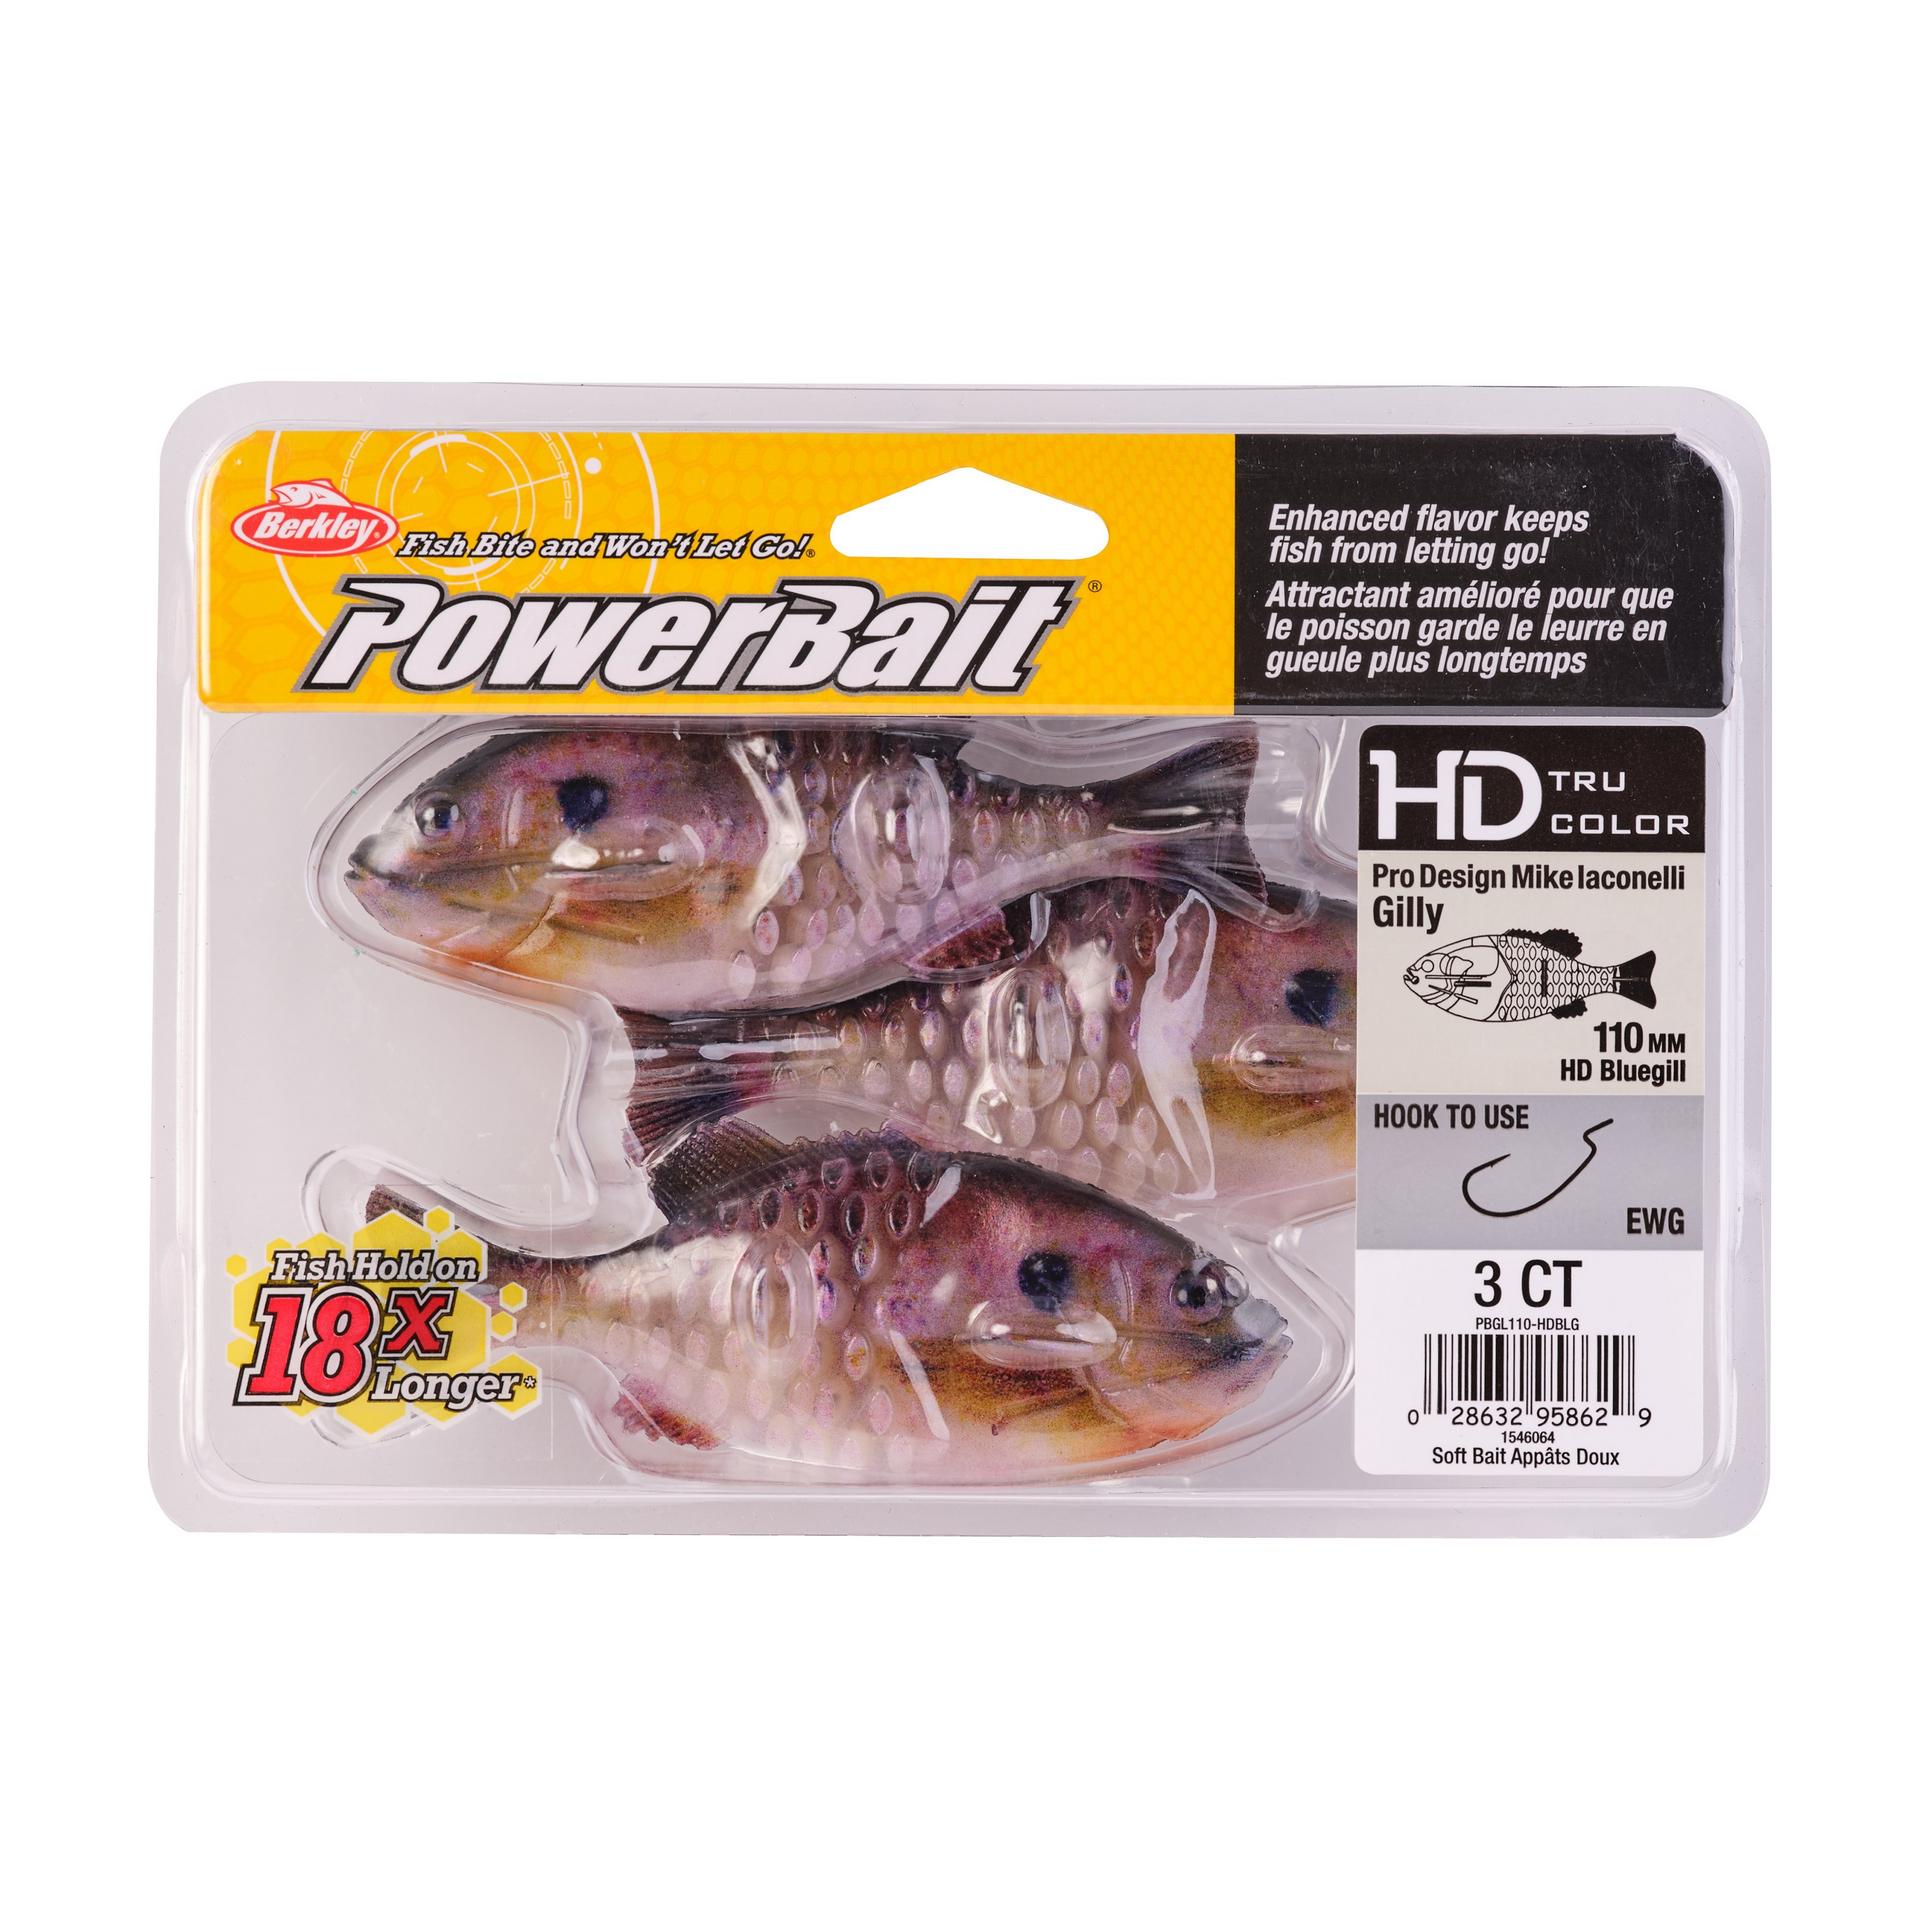 PowerBaitGilly HDBluegill 110mm PKG | Berkley Fishing